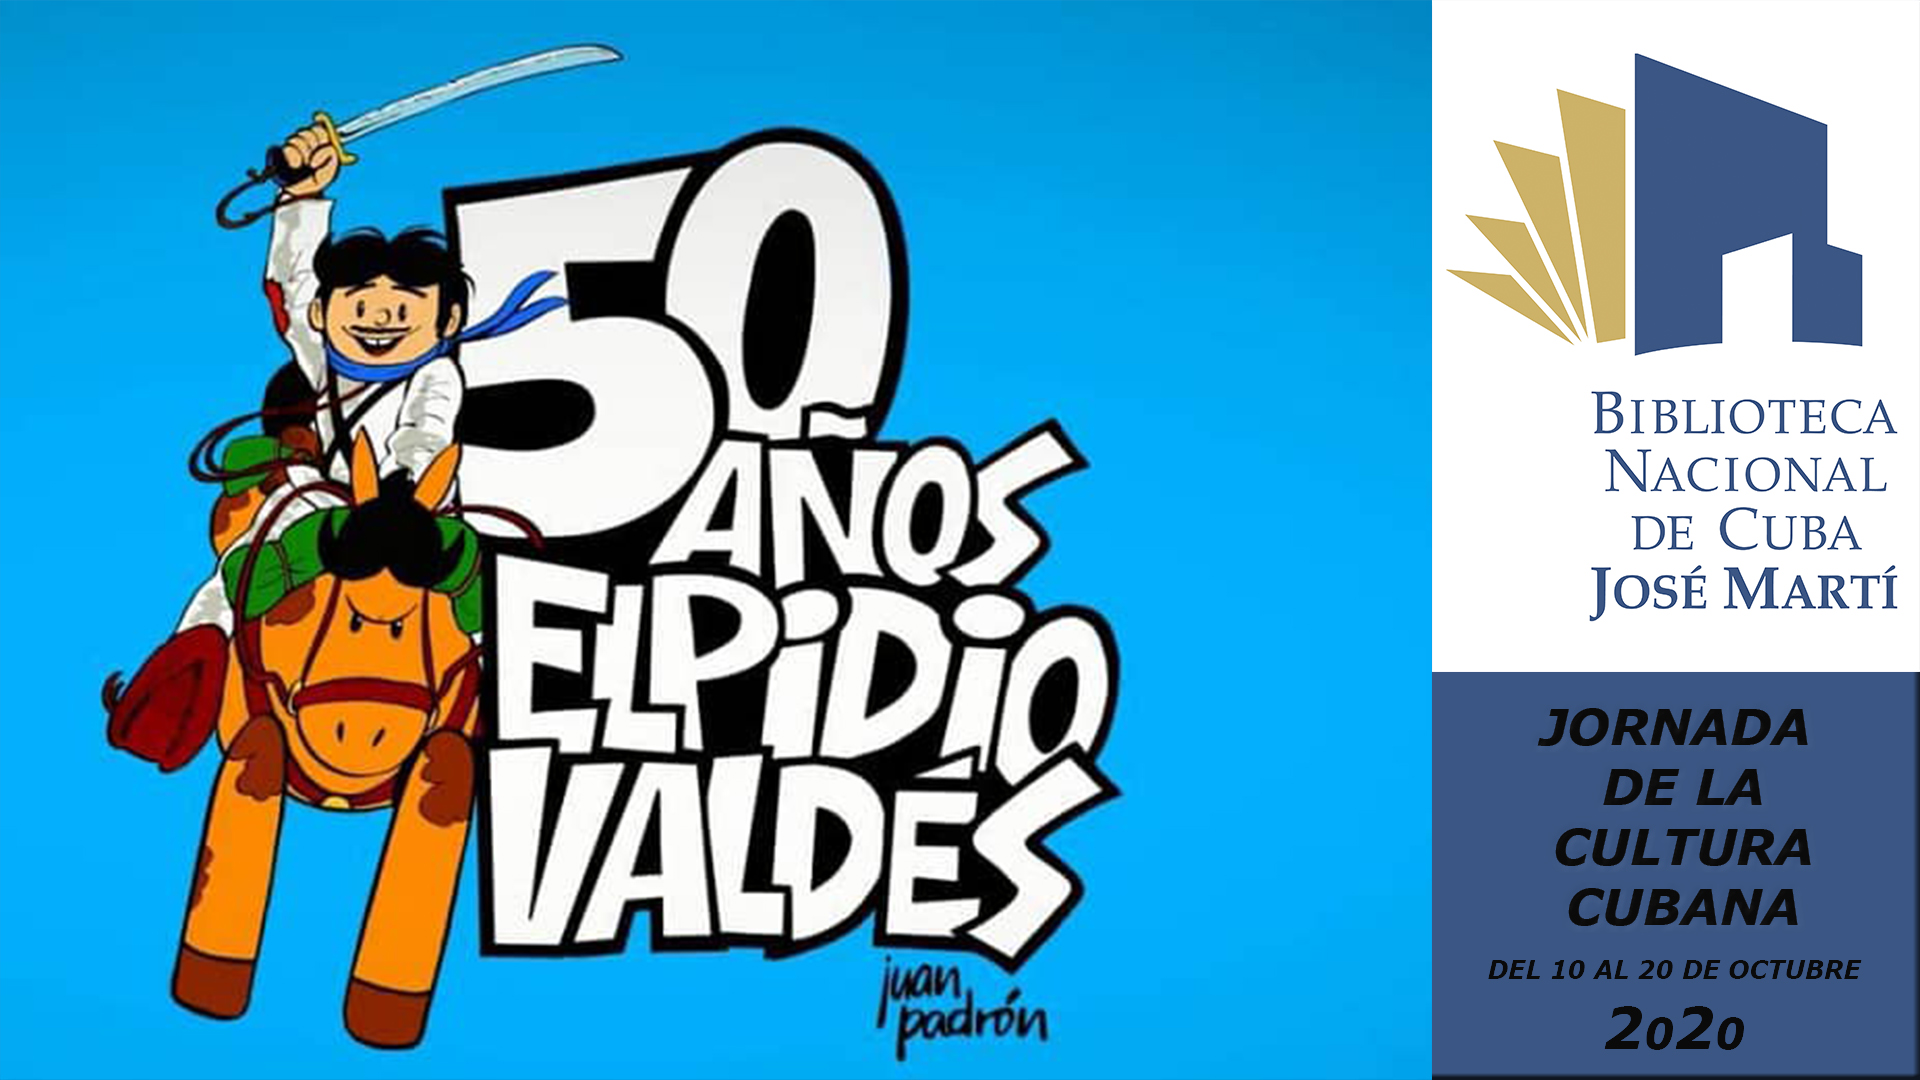 Foto de Jornada por la Cultura Cubana. 50 años de Elpidio Valdés. Frases de Elpidio Valdés, sus aliados y enemigos.